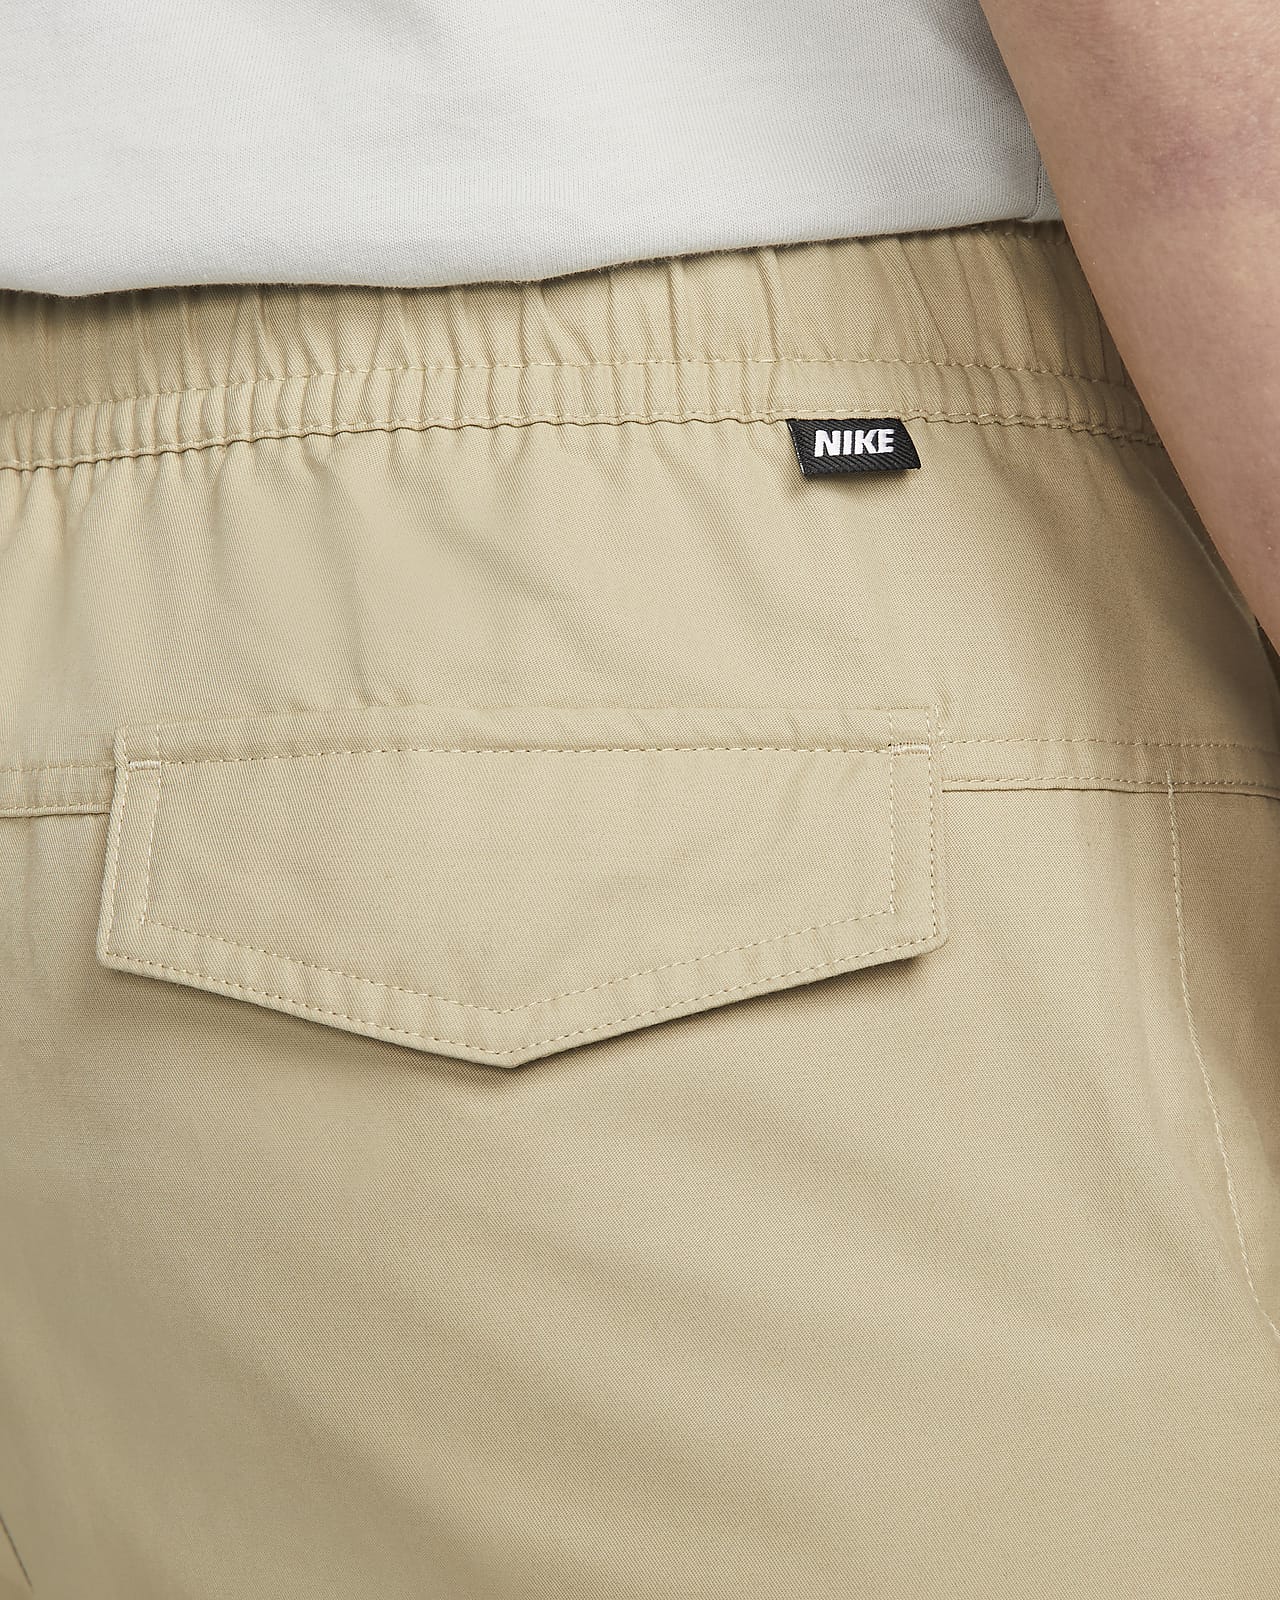 Nike Sportswear Unlined Utility Tan Cargo Pants Men's Extra Large